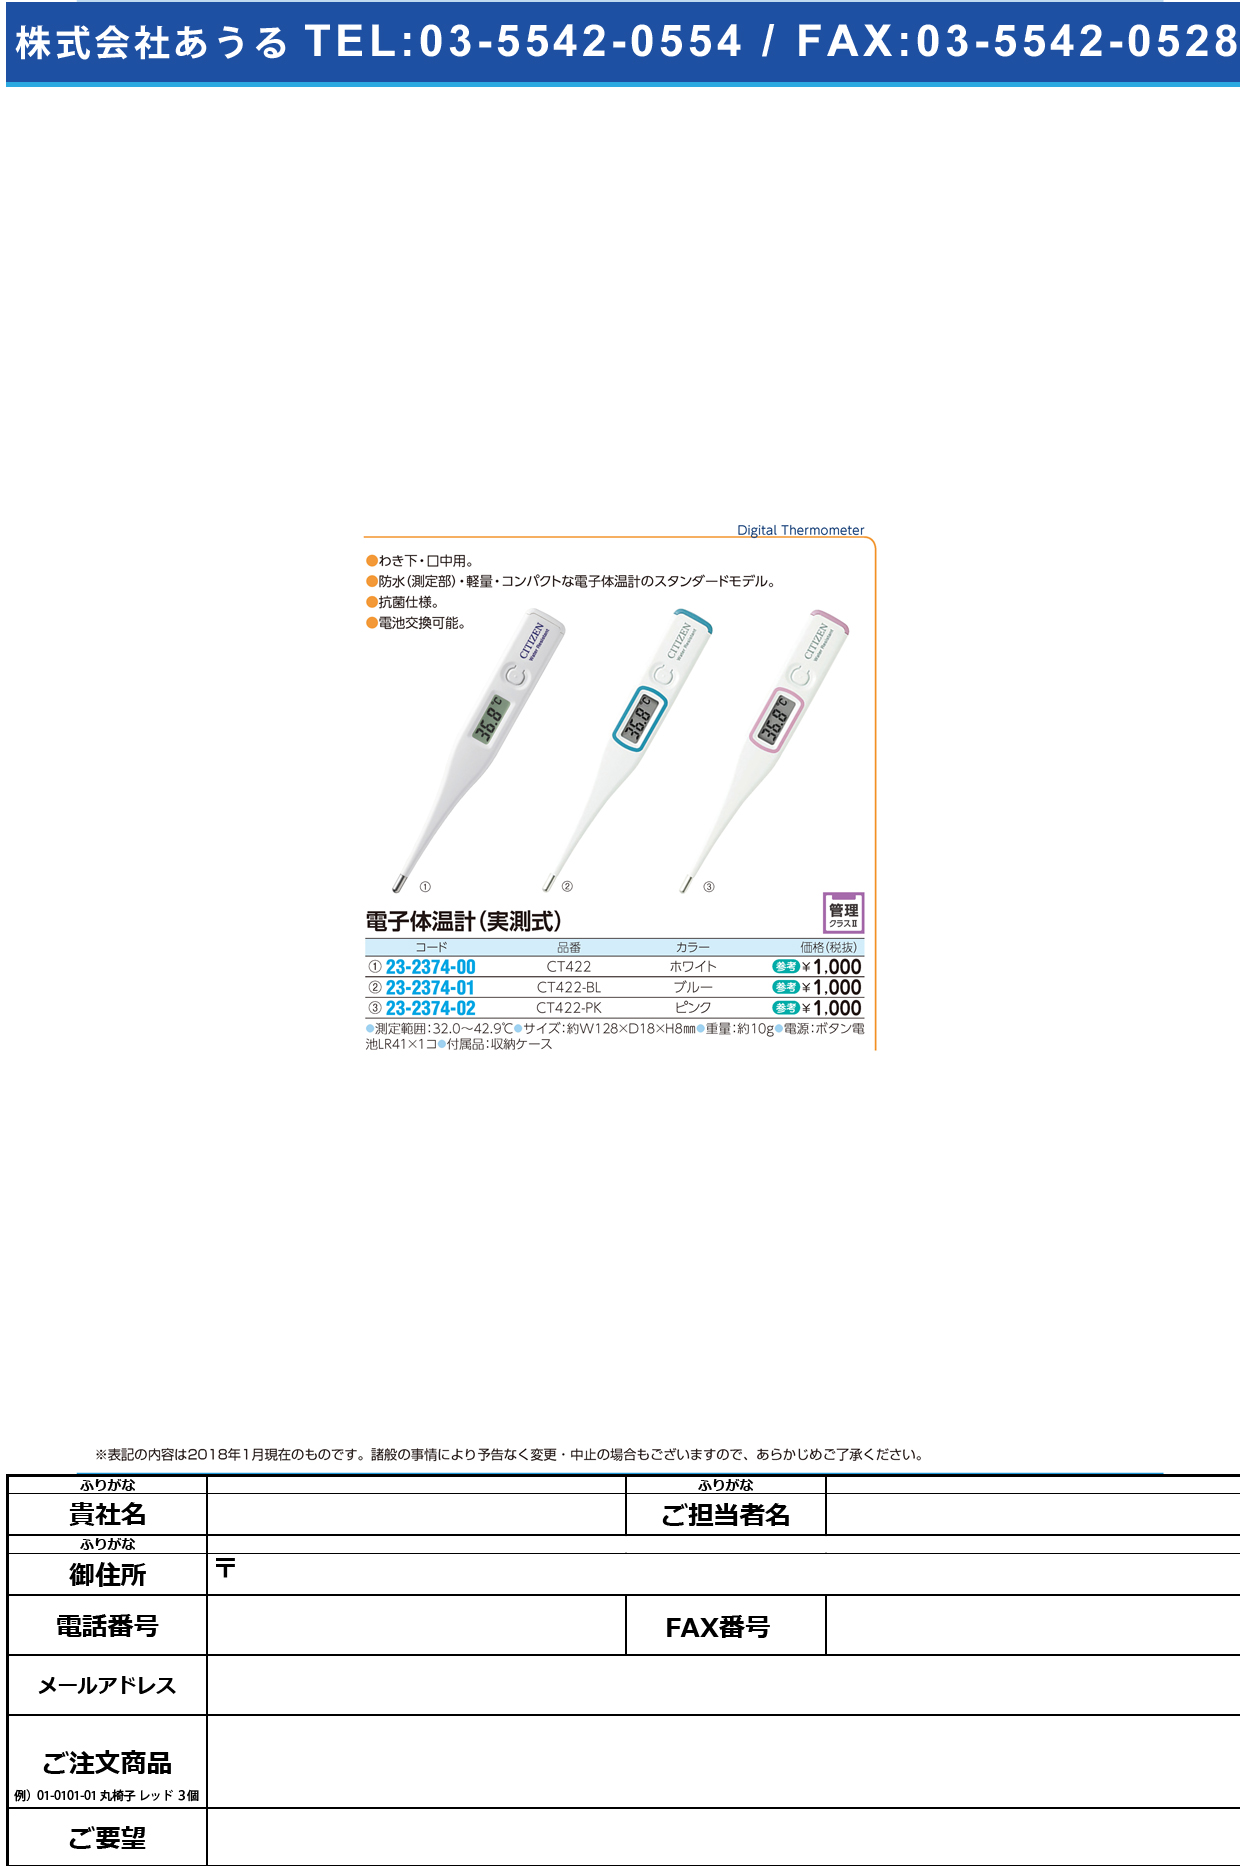 (23-2374-01)シチズン電子体温計（実測式） CT422-BL ｼﾁｽﾞﾝﾃﾞﾝｼﾀｲｵﾝｹｲ【1本単位】【2018年カタログ商品】